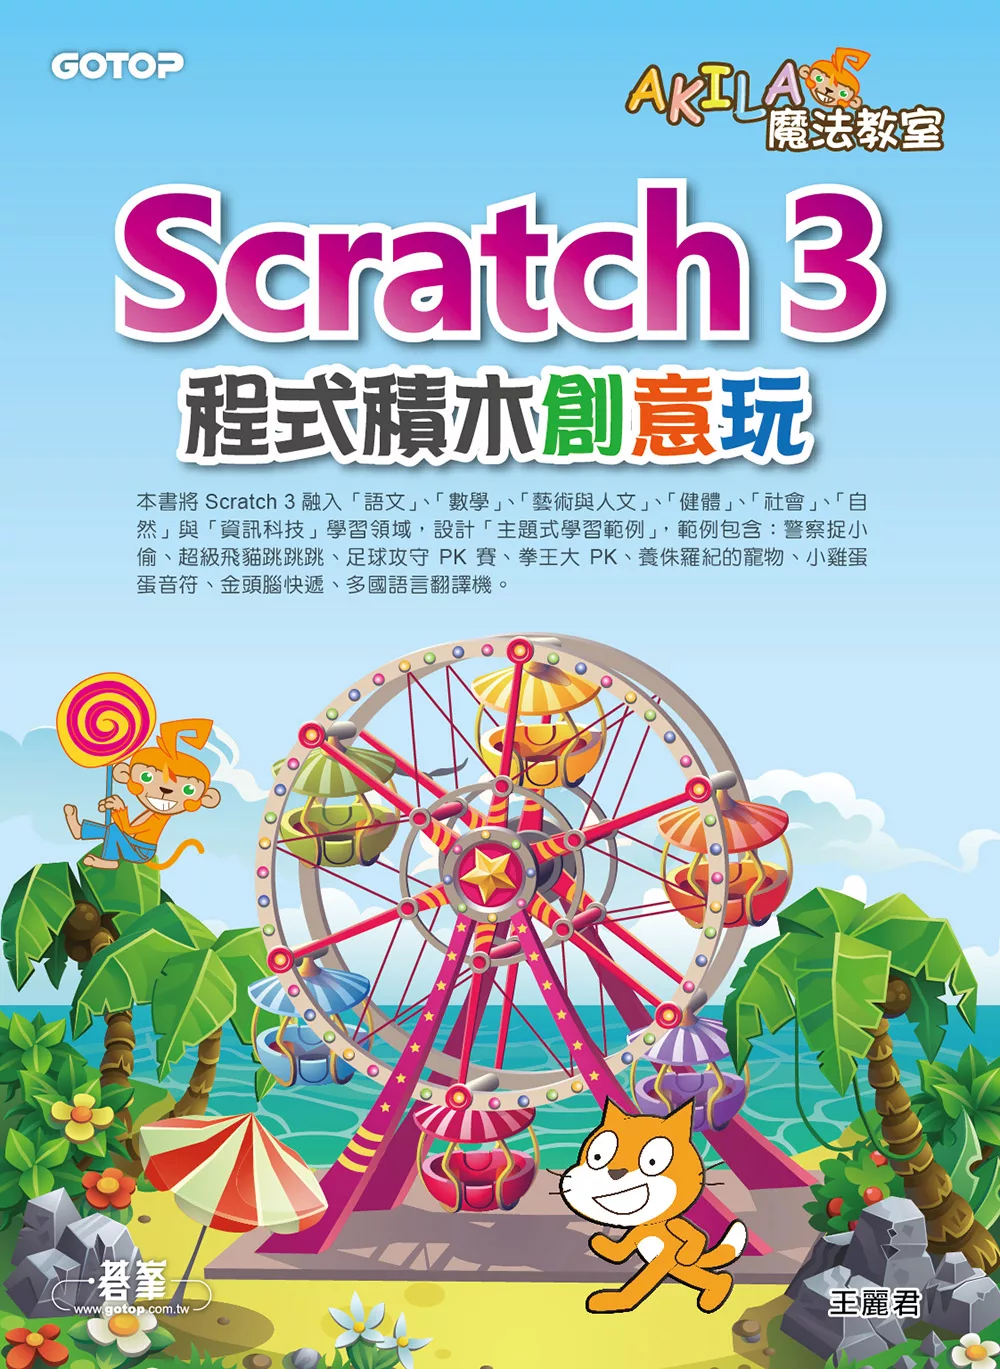 AKILA魔法教室-Scratch 3程式積木創意玩 (電子書)